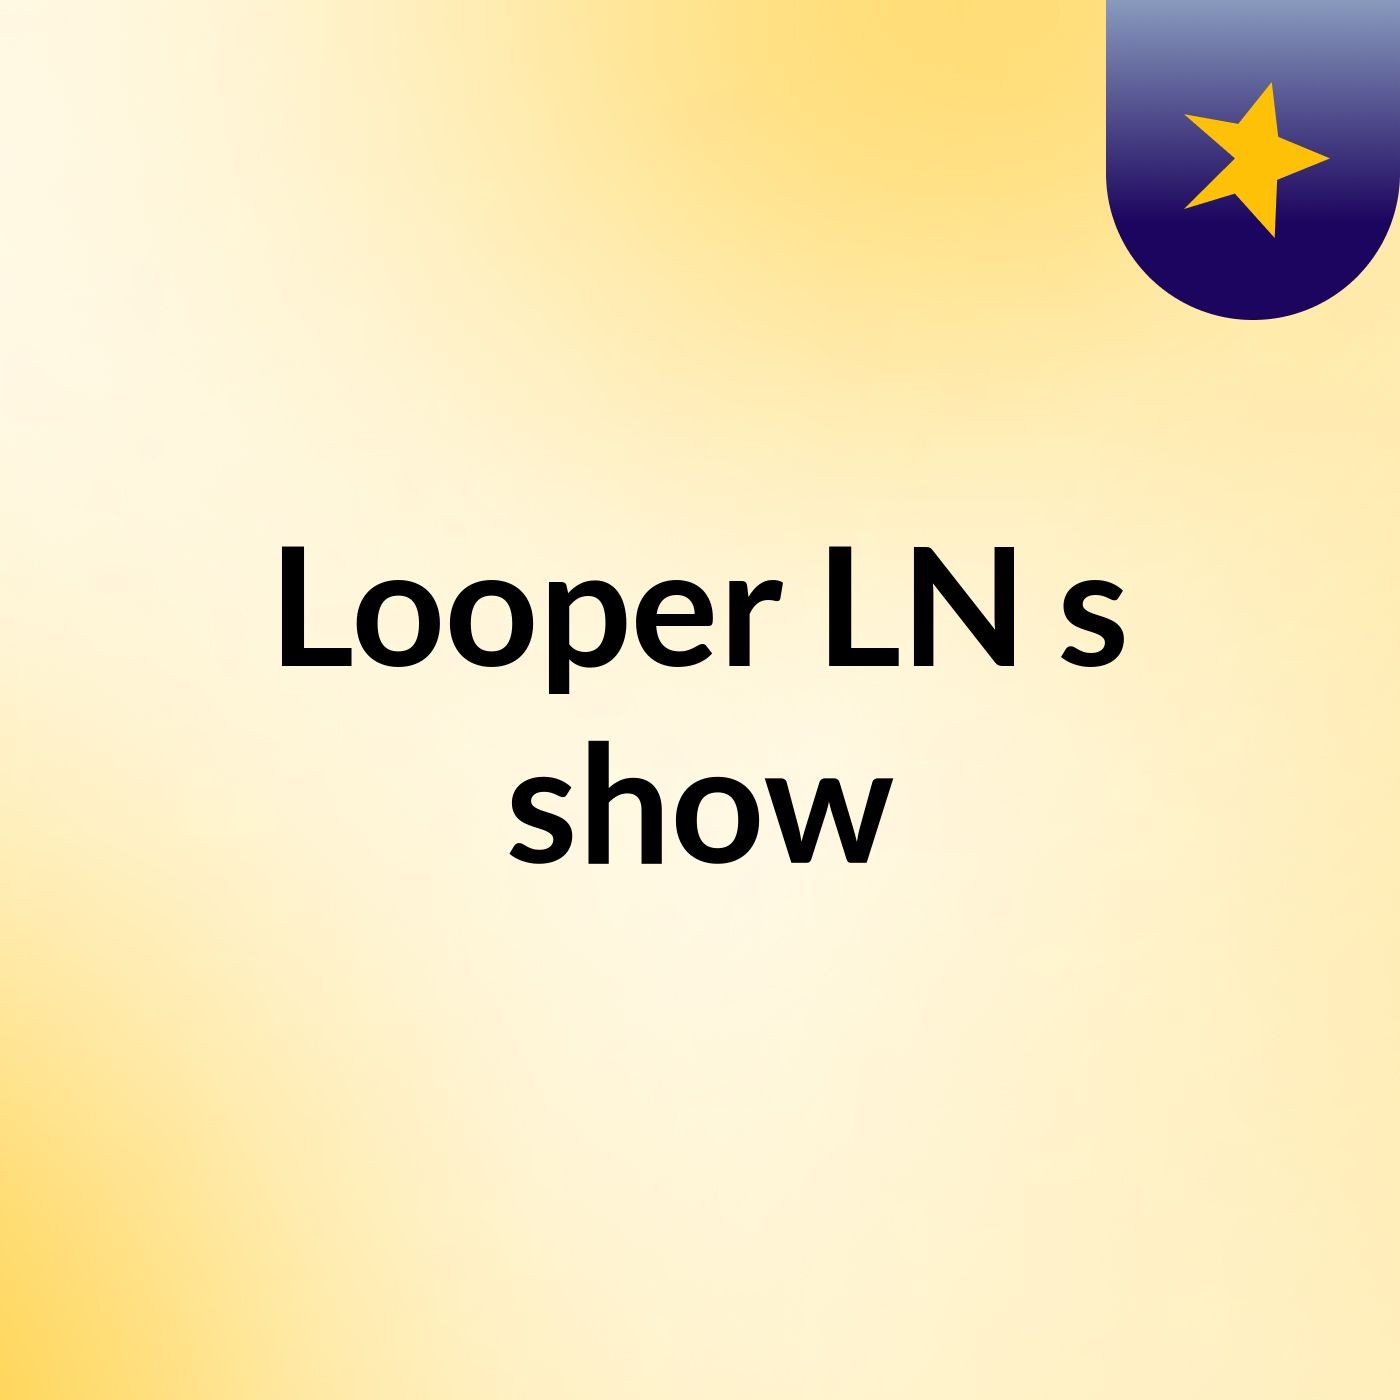 Looper LN's show